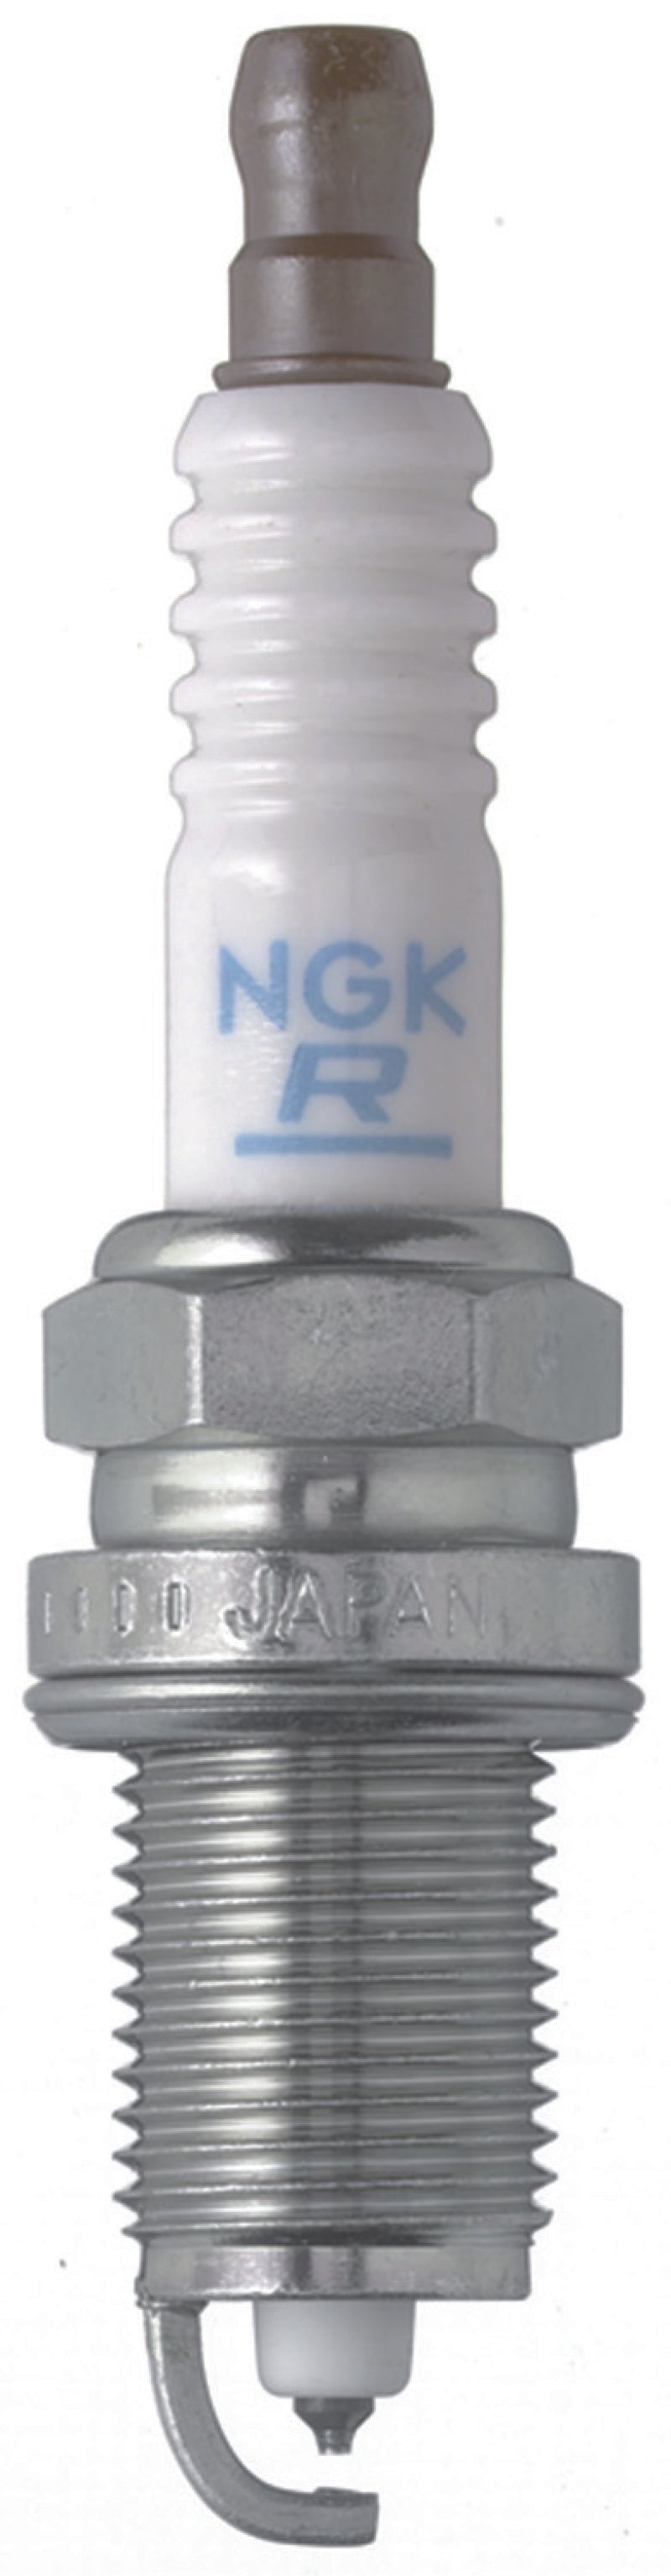 NGK Laser Platinum Spark Plug Box of 4 (PZFR6H)